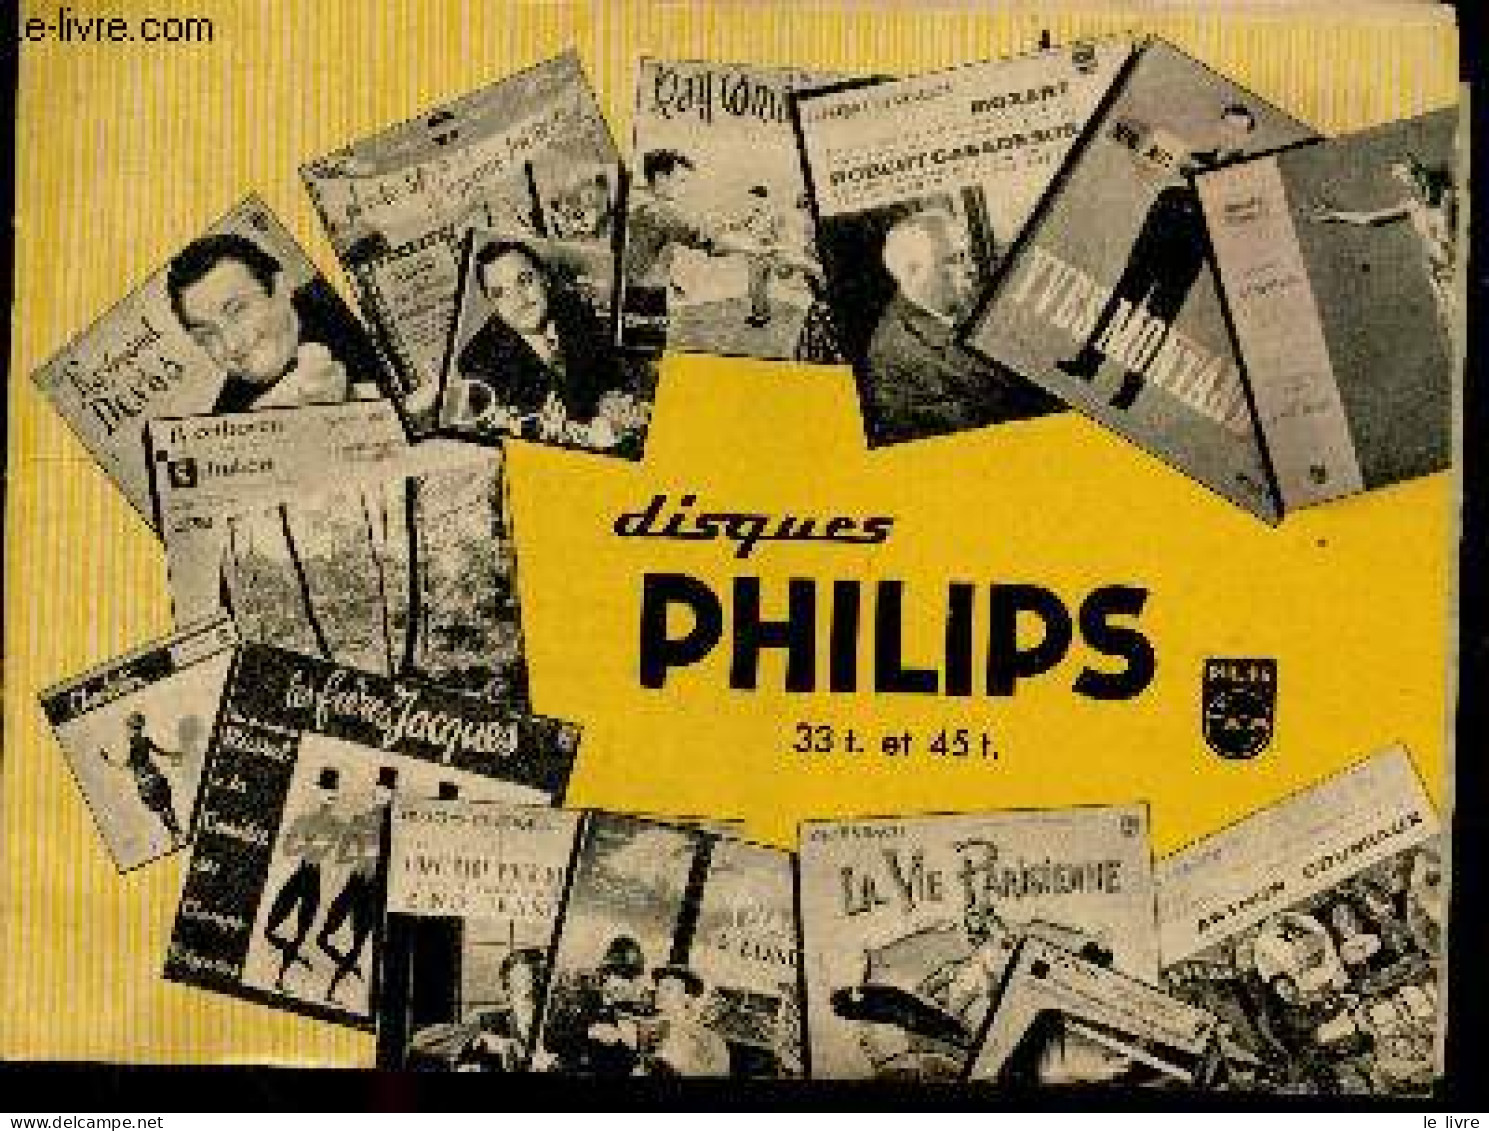 Disques Philips 33T. Et 45T. - Livret Publicitaire - Classiques Pour Tous, Operettes, Theatre Pour Tous, Jazz, Opera, Ch - Musique